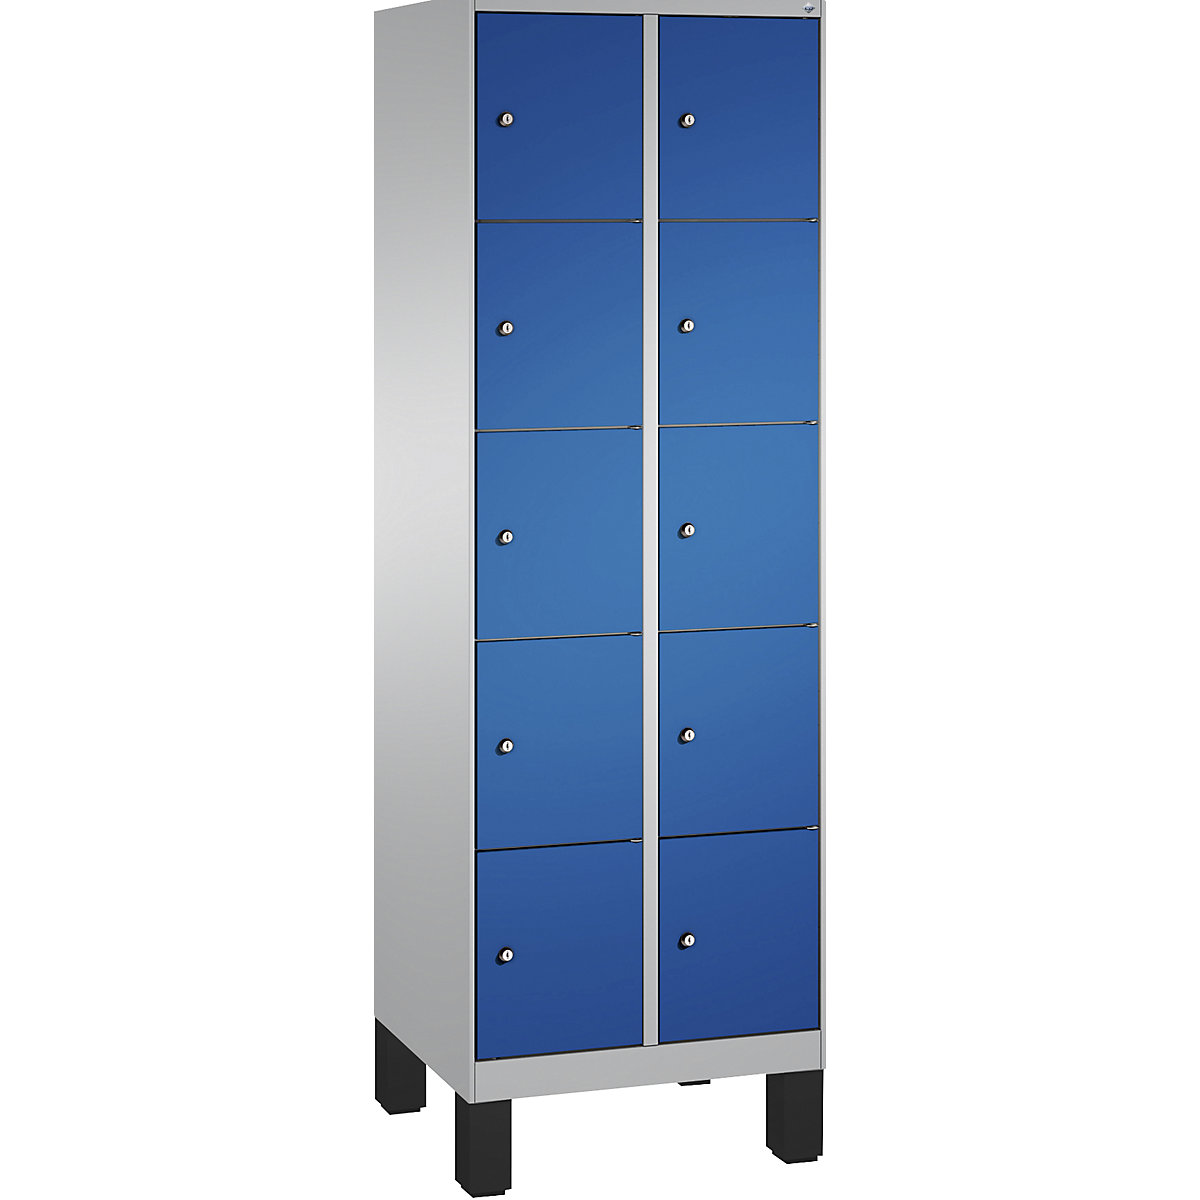 Armoire à casiers sur pieds EVOLO – C+P, 2 compartiments, 5 casiers chacun, largeur compartiments 300 mm, aluminium / bleu gentiane-17